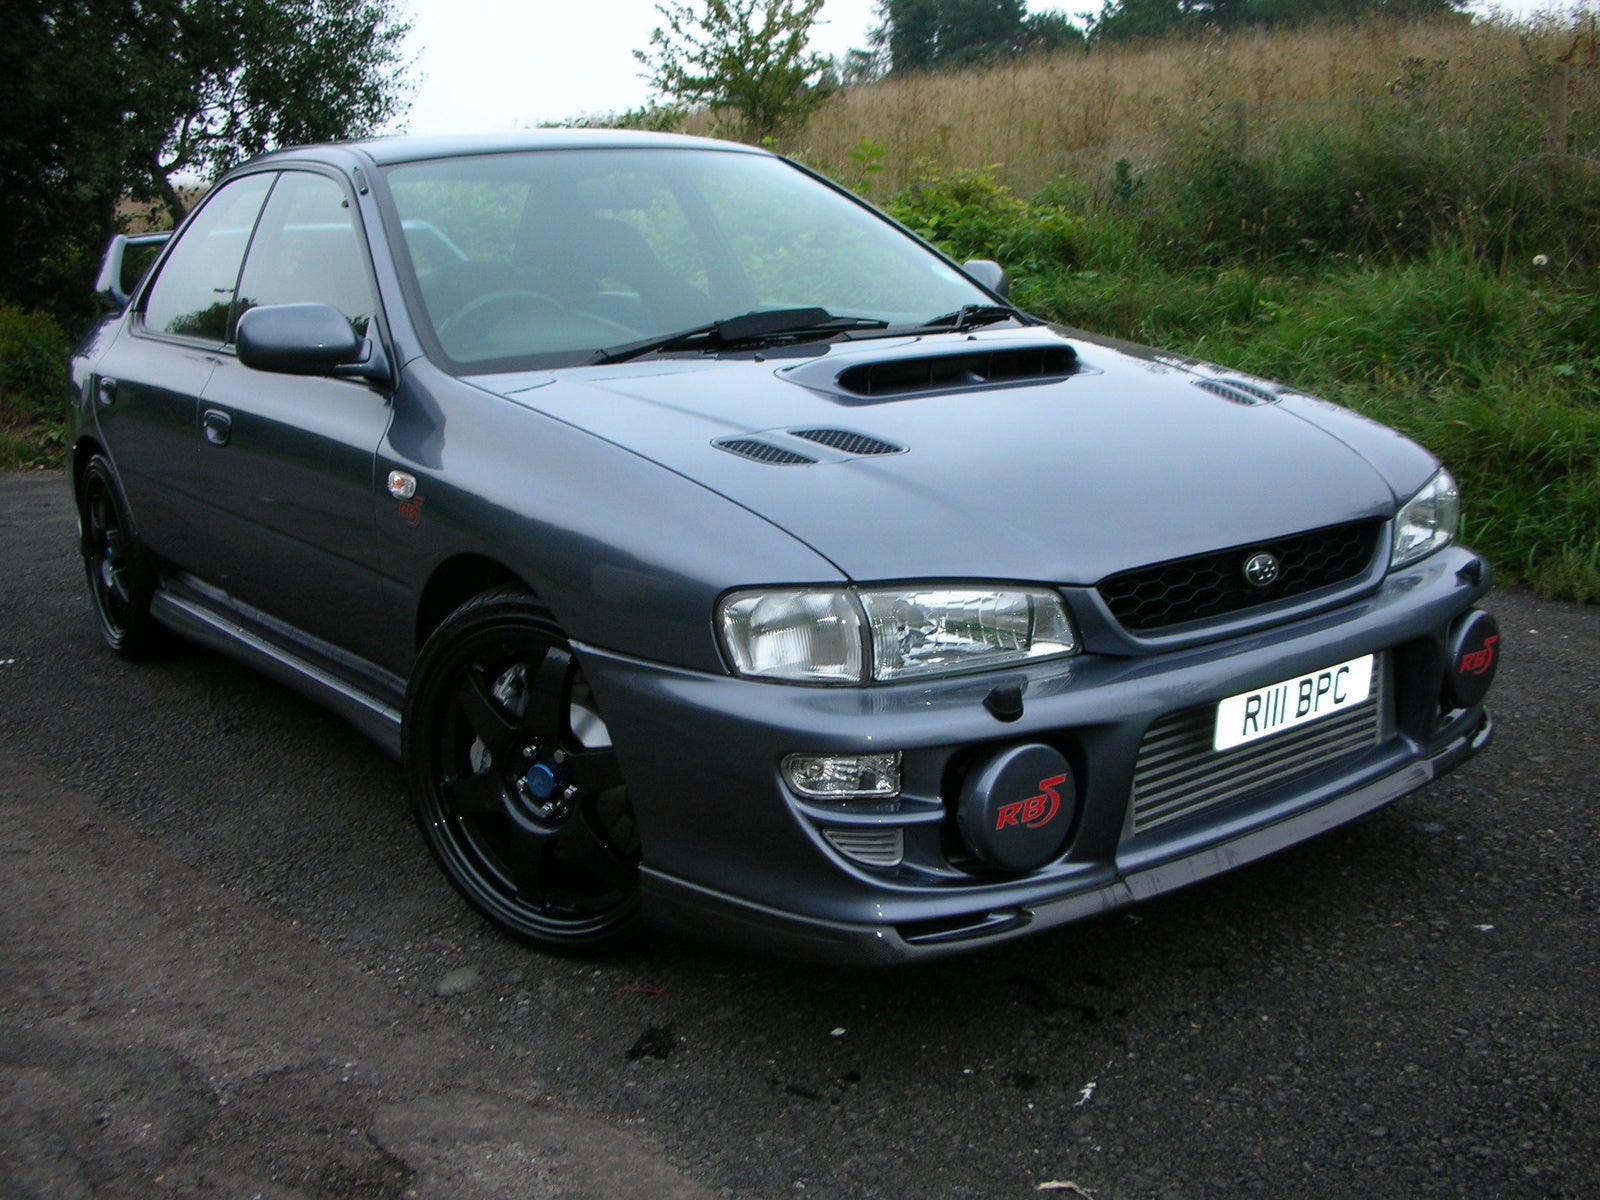 1999 Subaru Impreza Pictures CarGurus